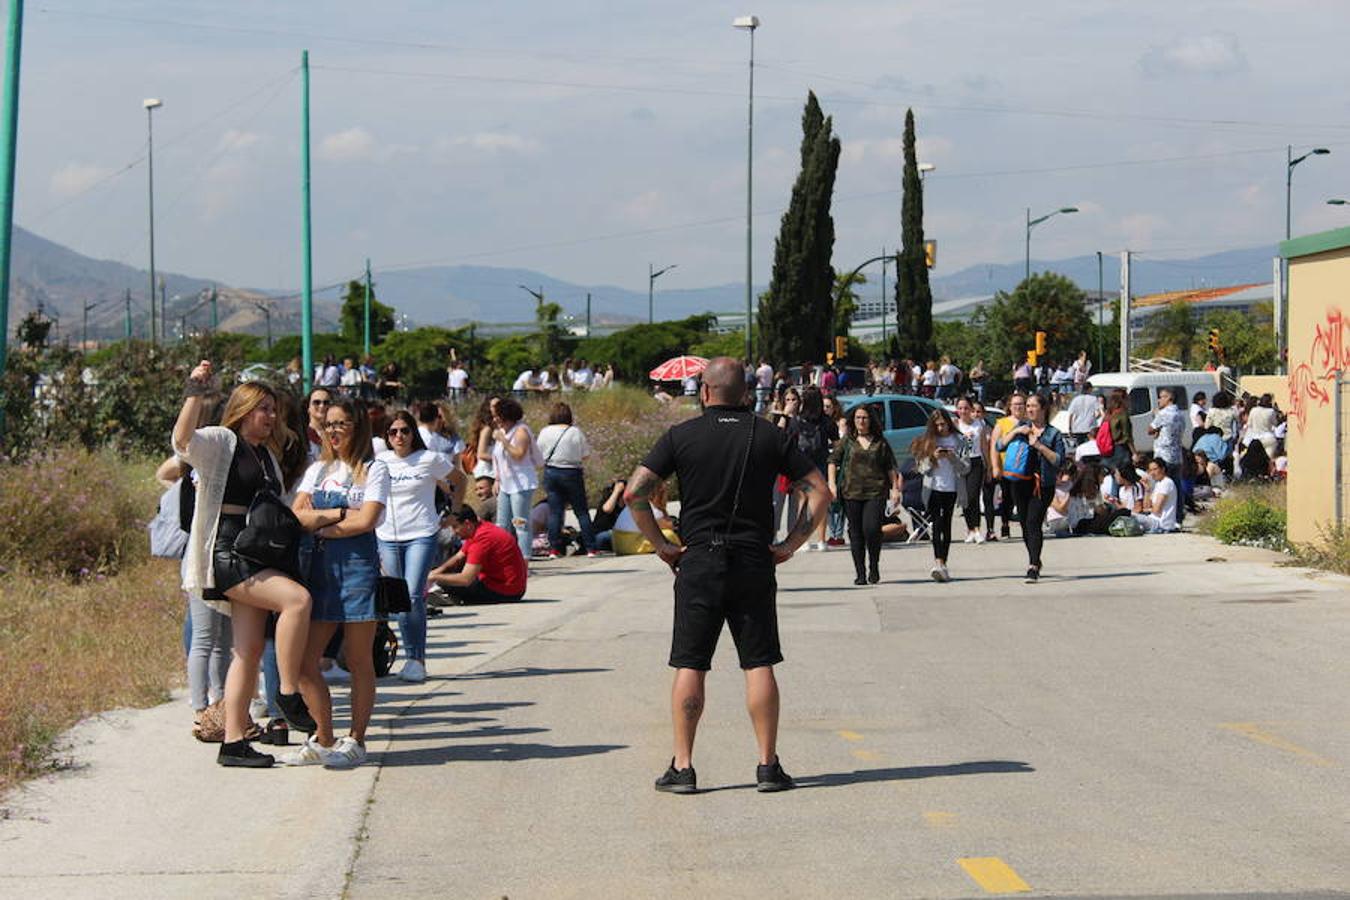 Miles de seguidores se organizan en una fila de kilómetros con el objetivo de ver lo más cerca posible a su ídolo. Pablo Alborán arranca este viernes su nueva gira 'Prometo' en Málaga.